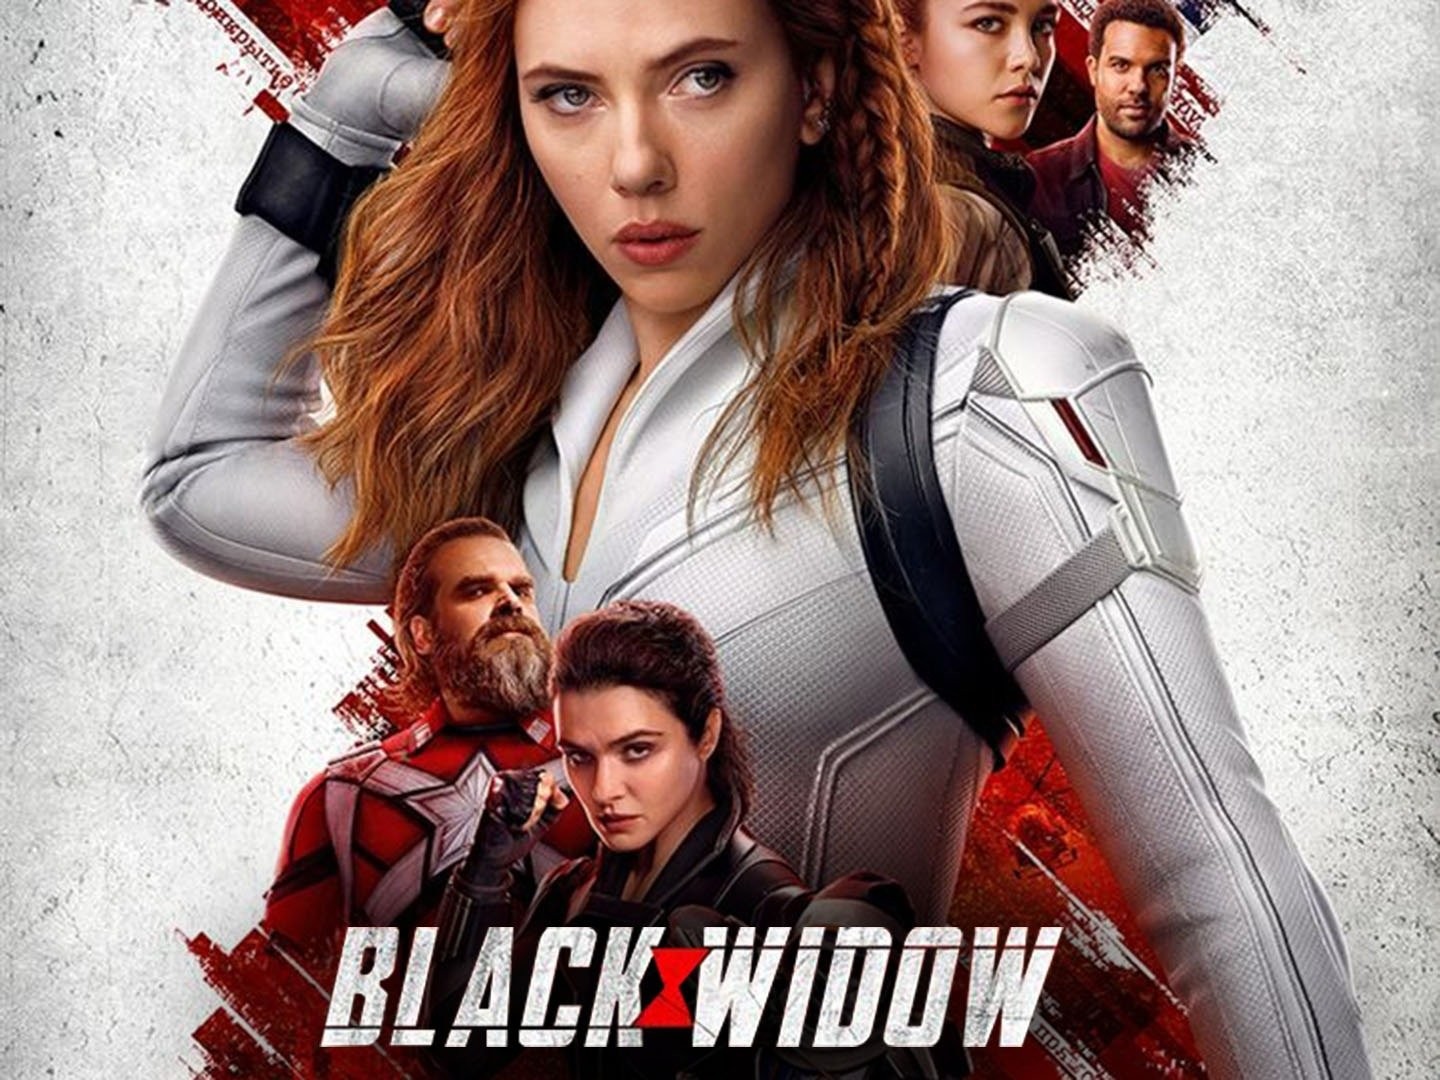 Black Widow (2021) - IMDb